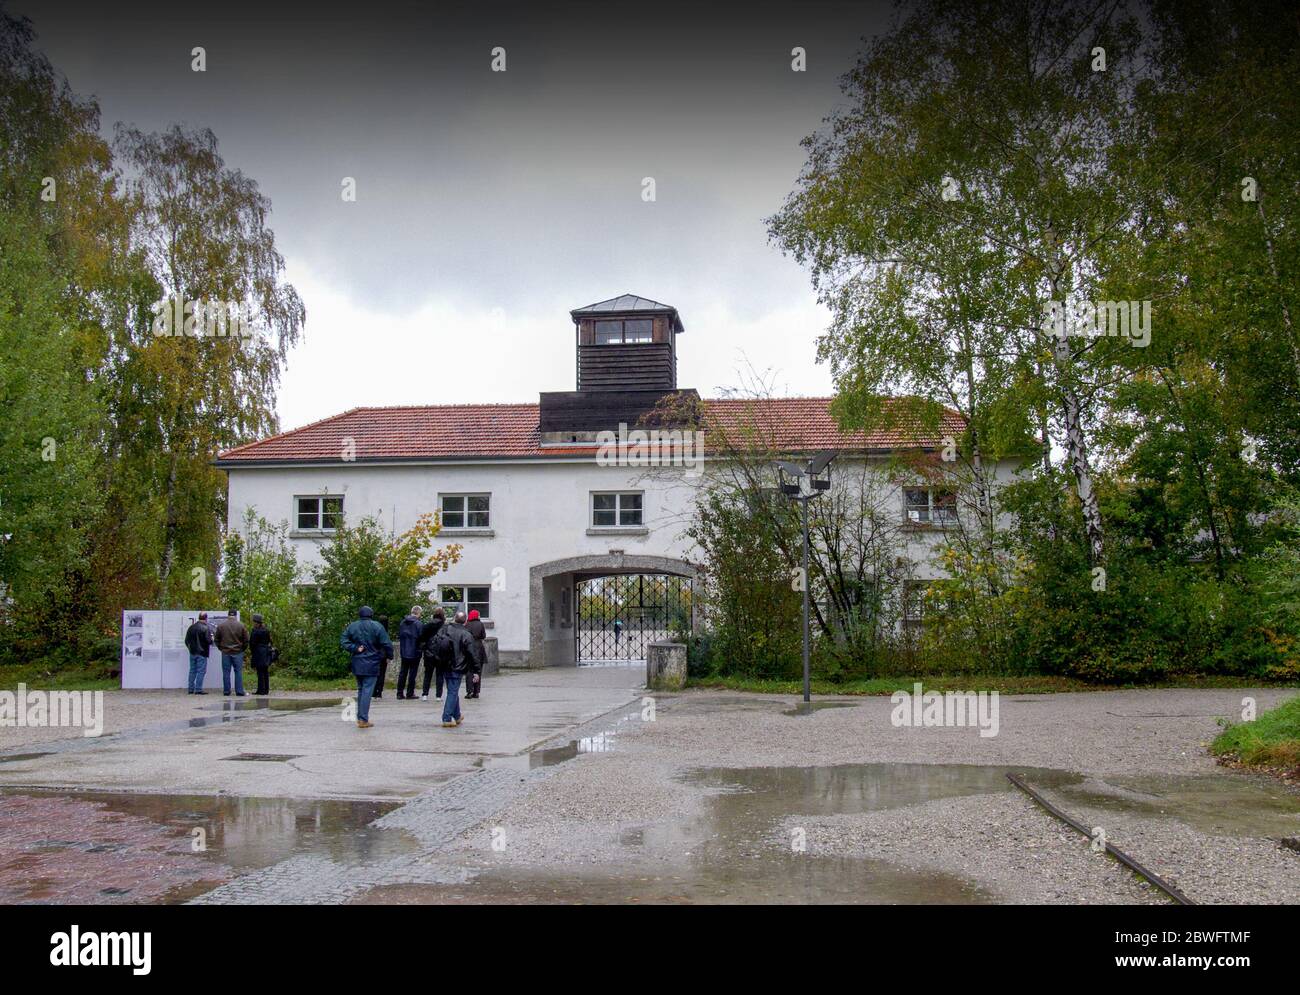 Bâtiment d'entrée du camp de concentration de Dachau. Ouvert en 1933, il fut le premier camp de concentration nazi et fut un prototype pour tous les autres Conce nazi Banque D'Images